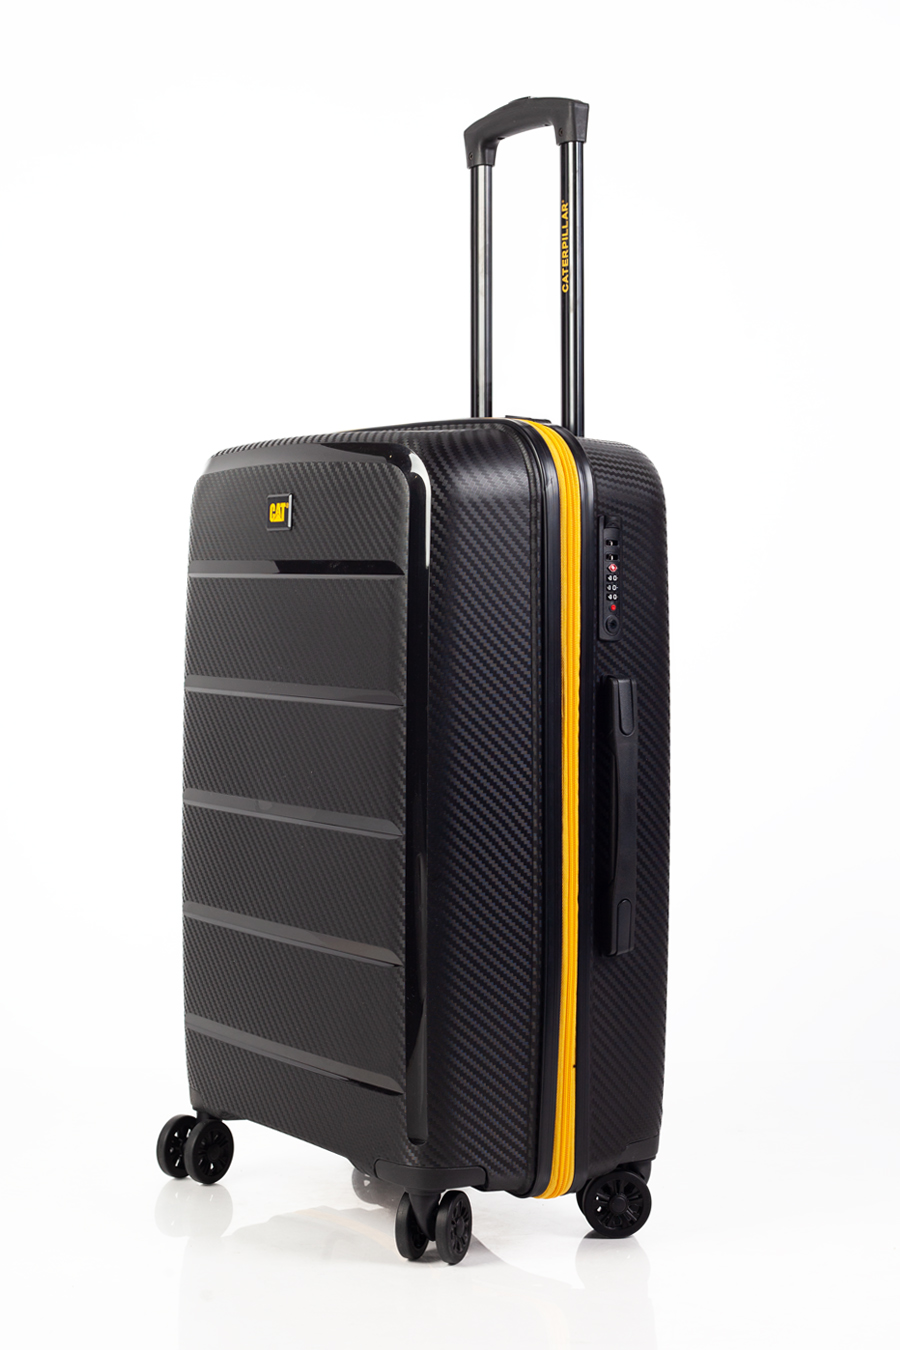 Travel suitcase CAT 84381-01